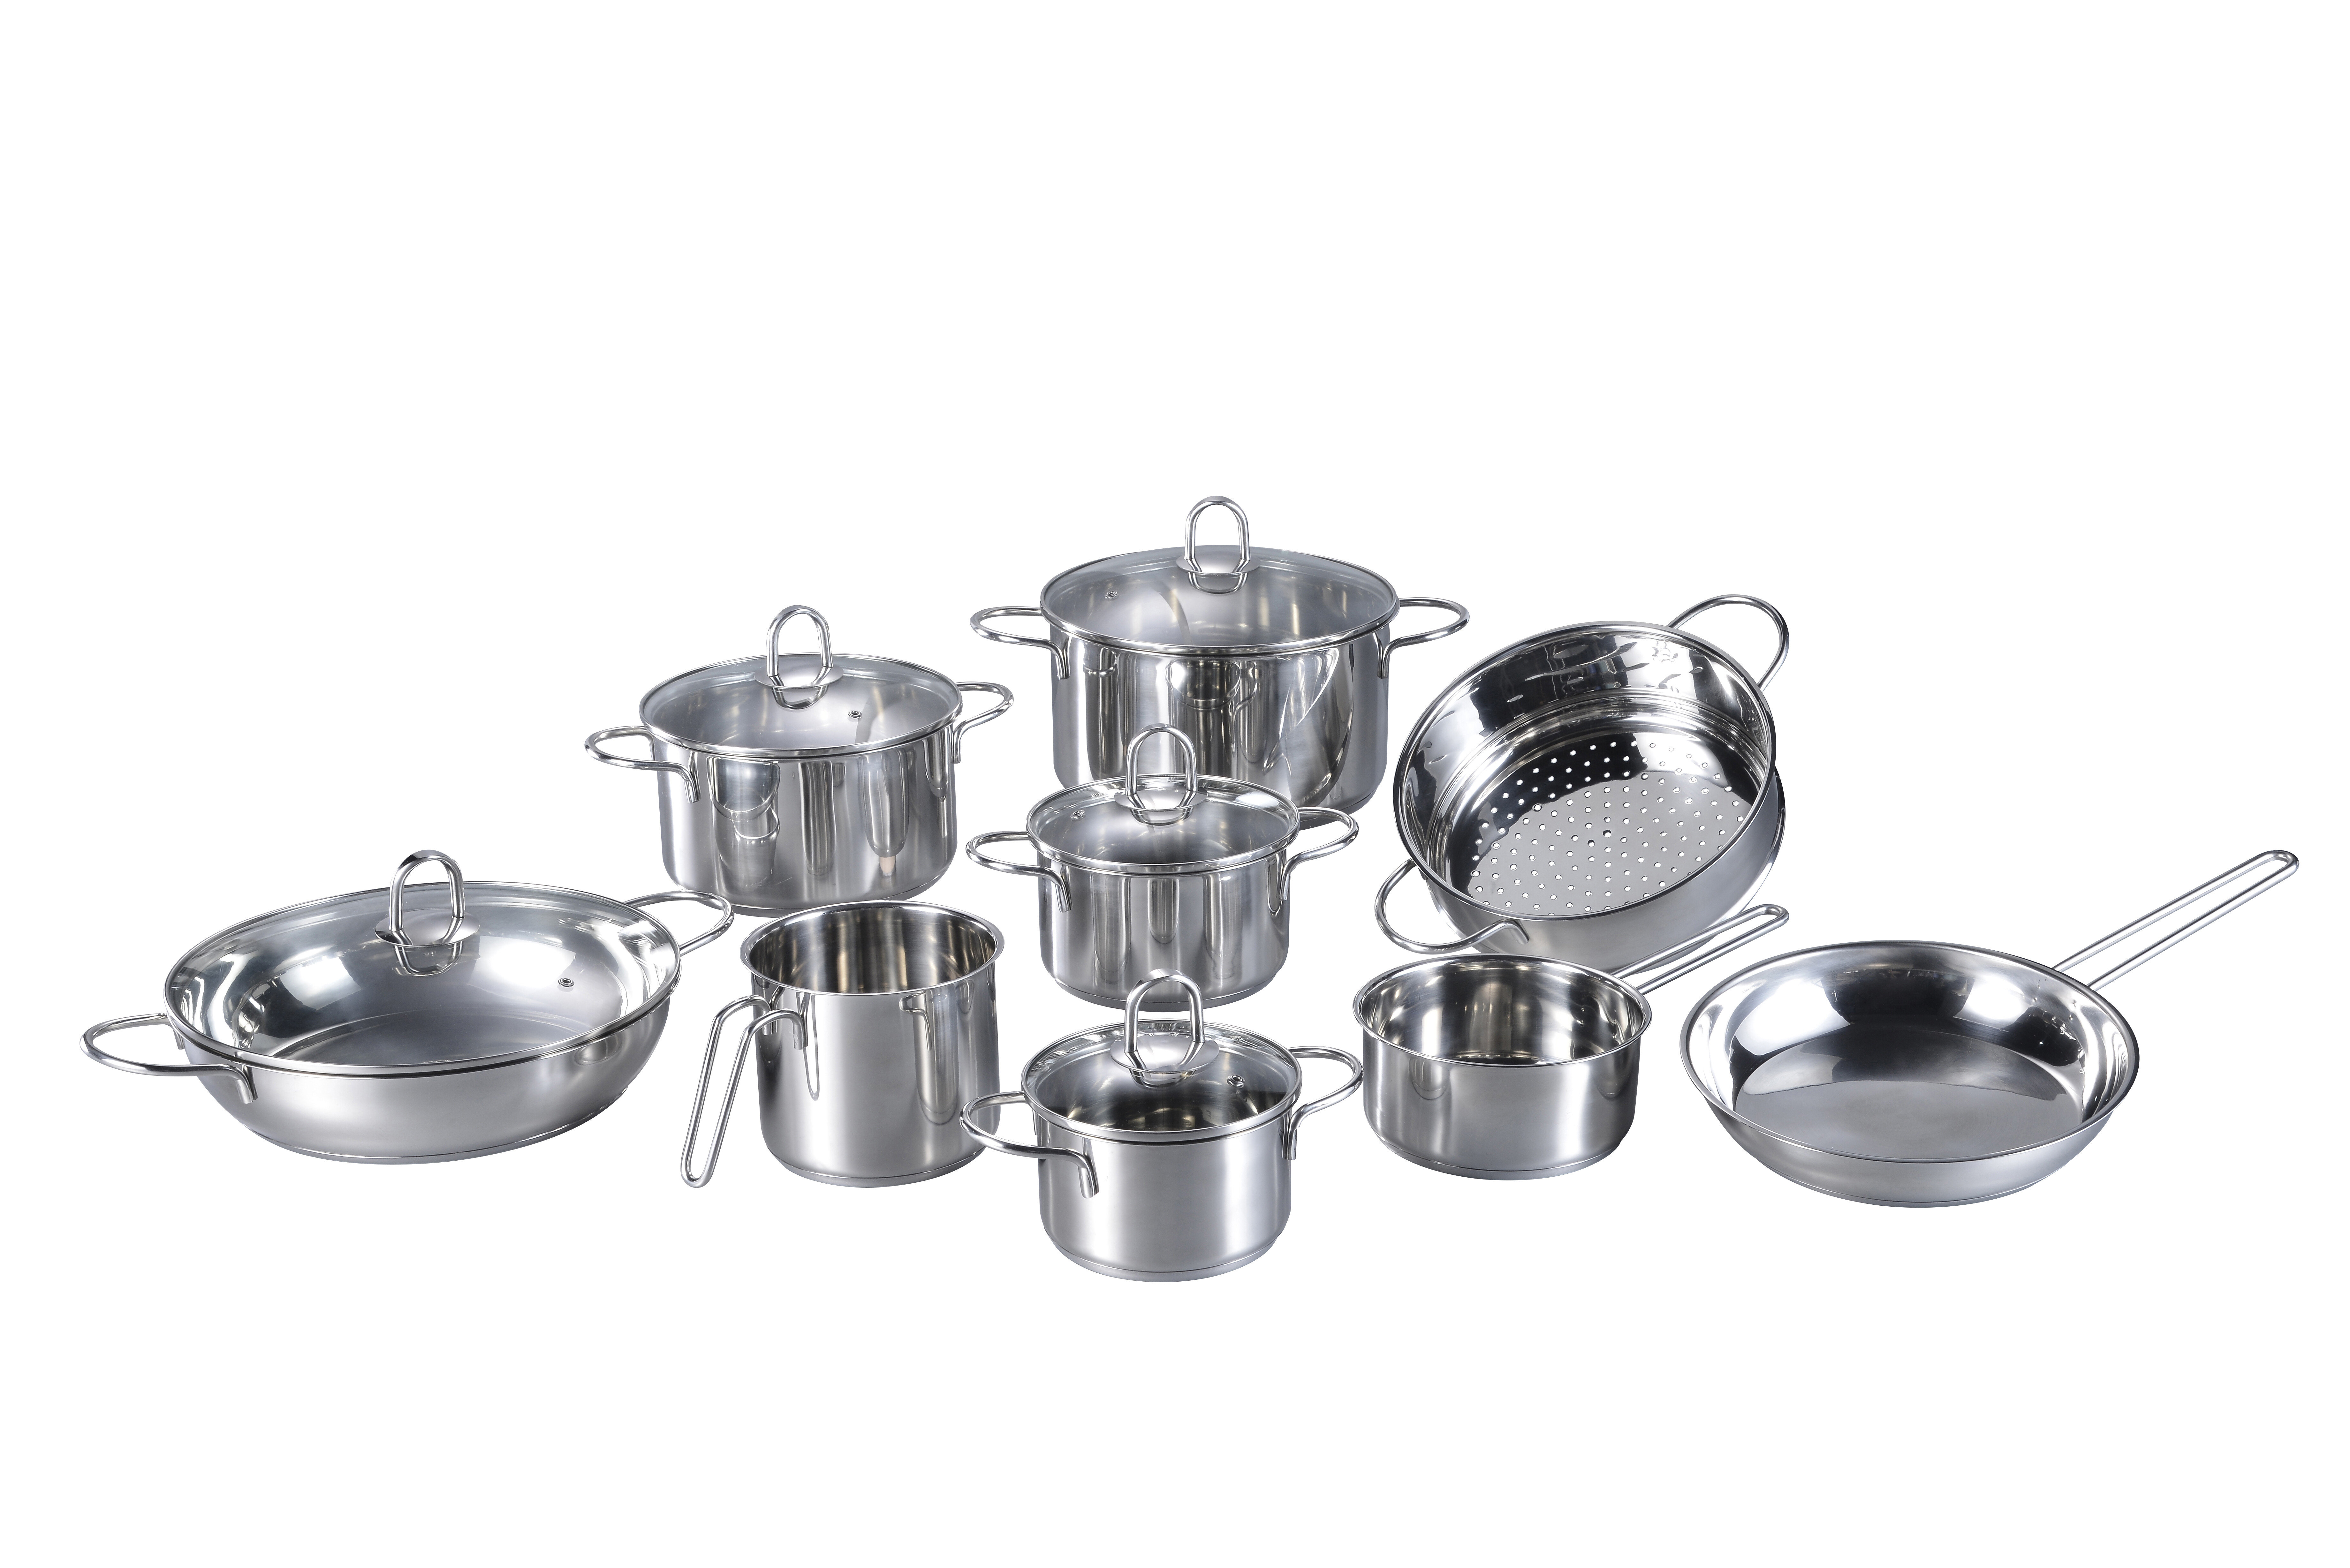 https://assets.wfcdn.com/im/83362088/compr-r85/2357/235720092/14-piece-non-stick-stainless-steel-cookware-set.jpg